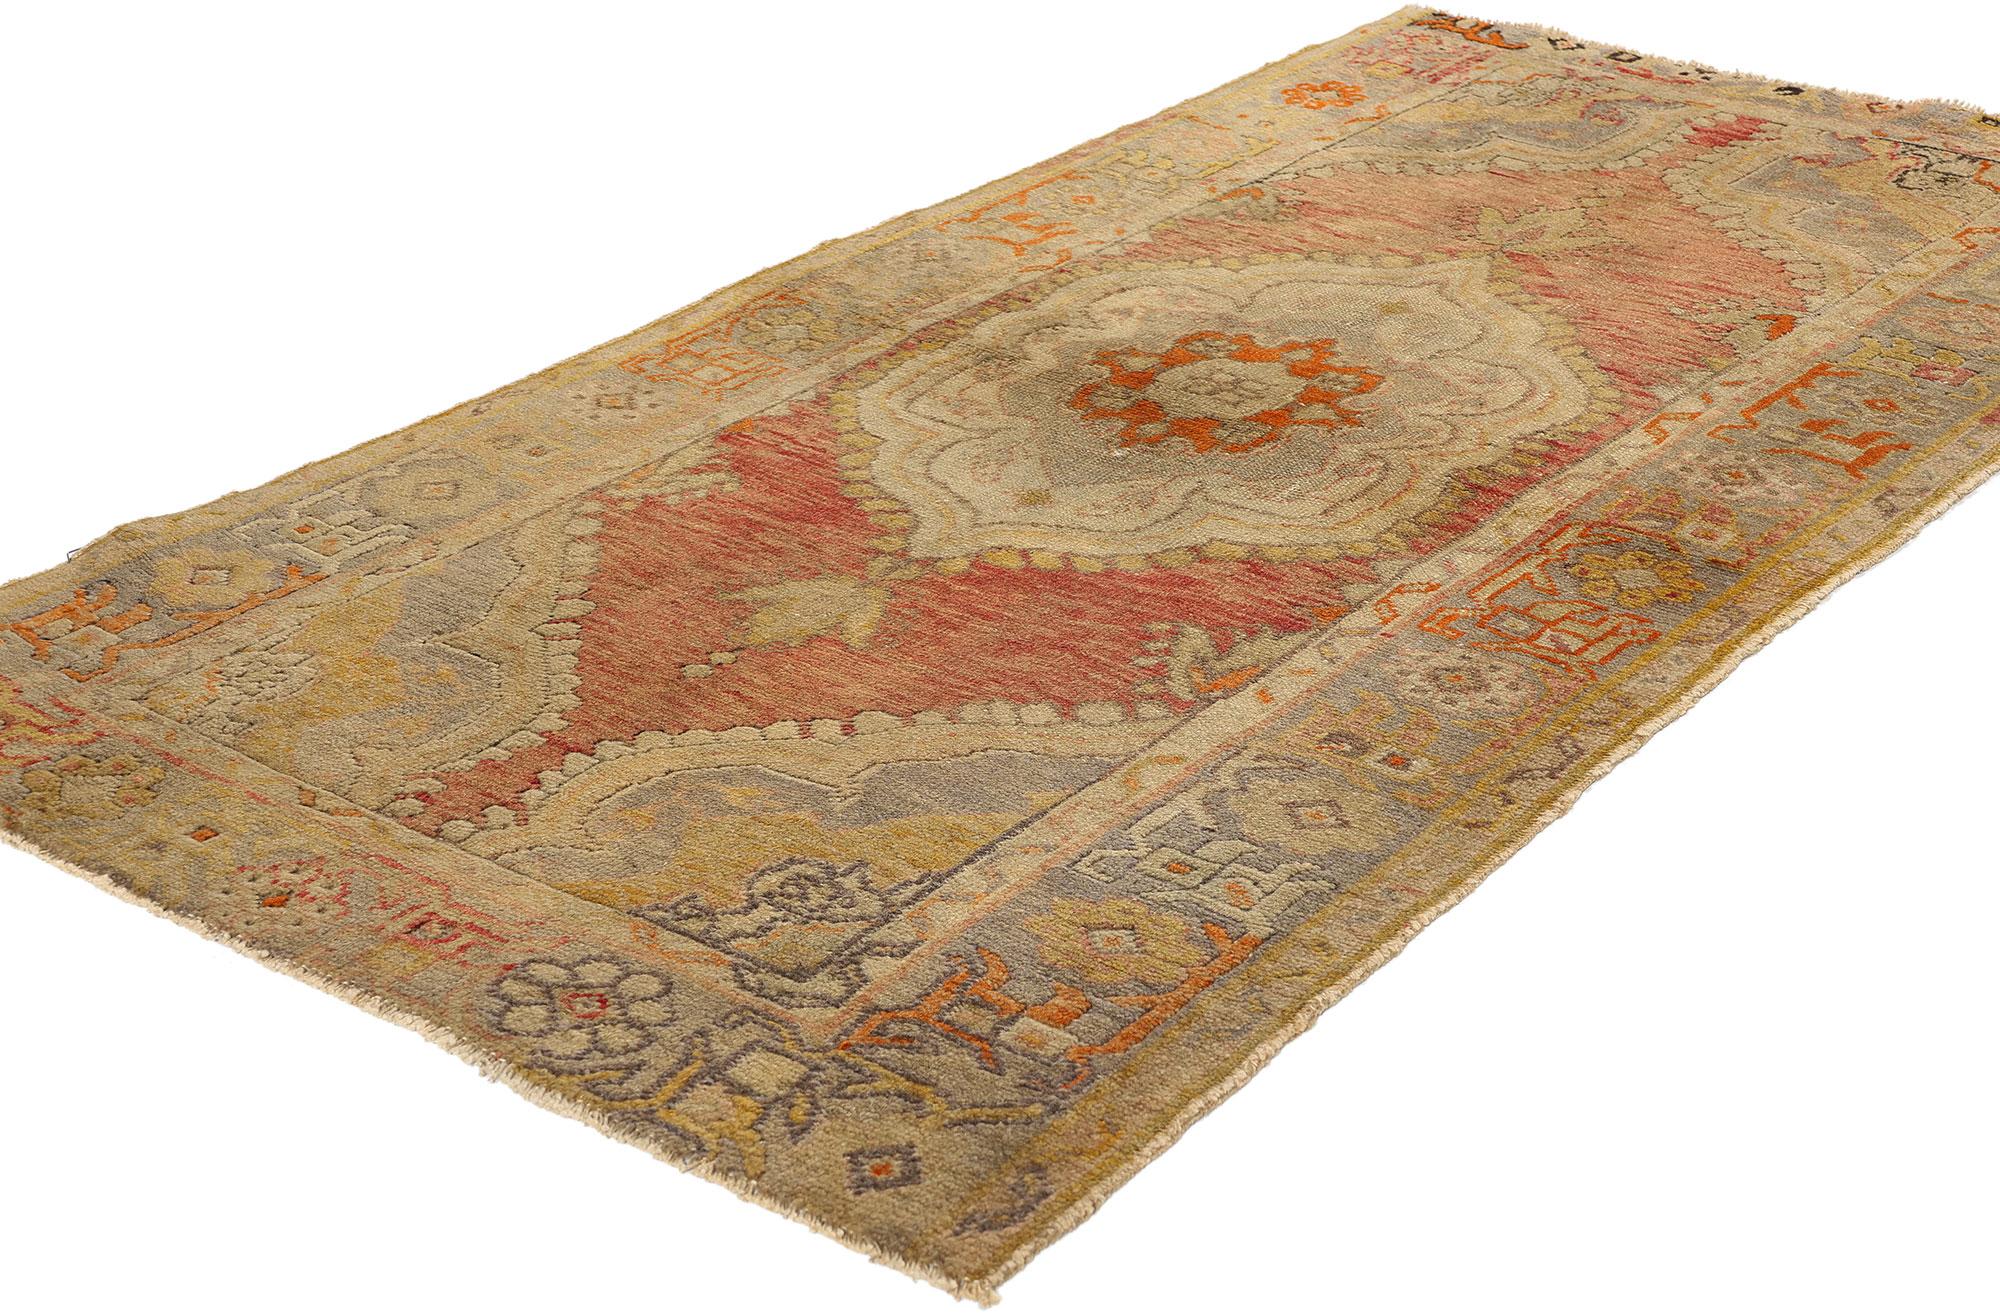 51084 Vintage Türkischer Oushak-Teppich, 02'11 x 05'07. Die türkischen Oushak-Teppiche stammen aus der westlichen Region Oushak in der Türkei und sind bekannt für ihre kunstvollen Designs, ruhigen Farbschemata und prächtigen Wollmaterialien. Diese